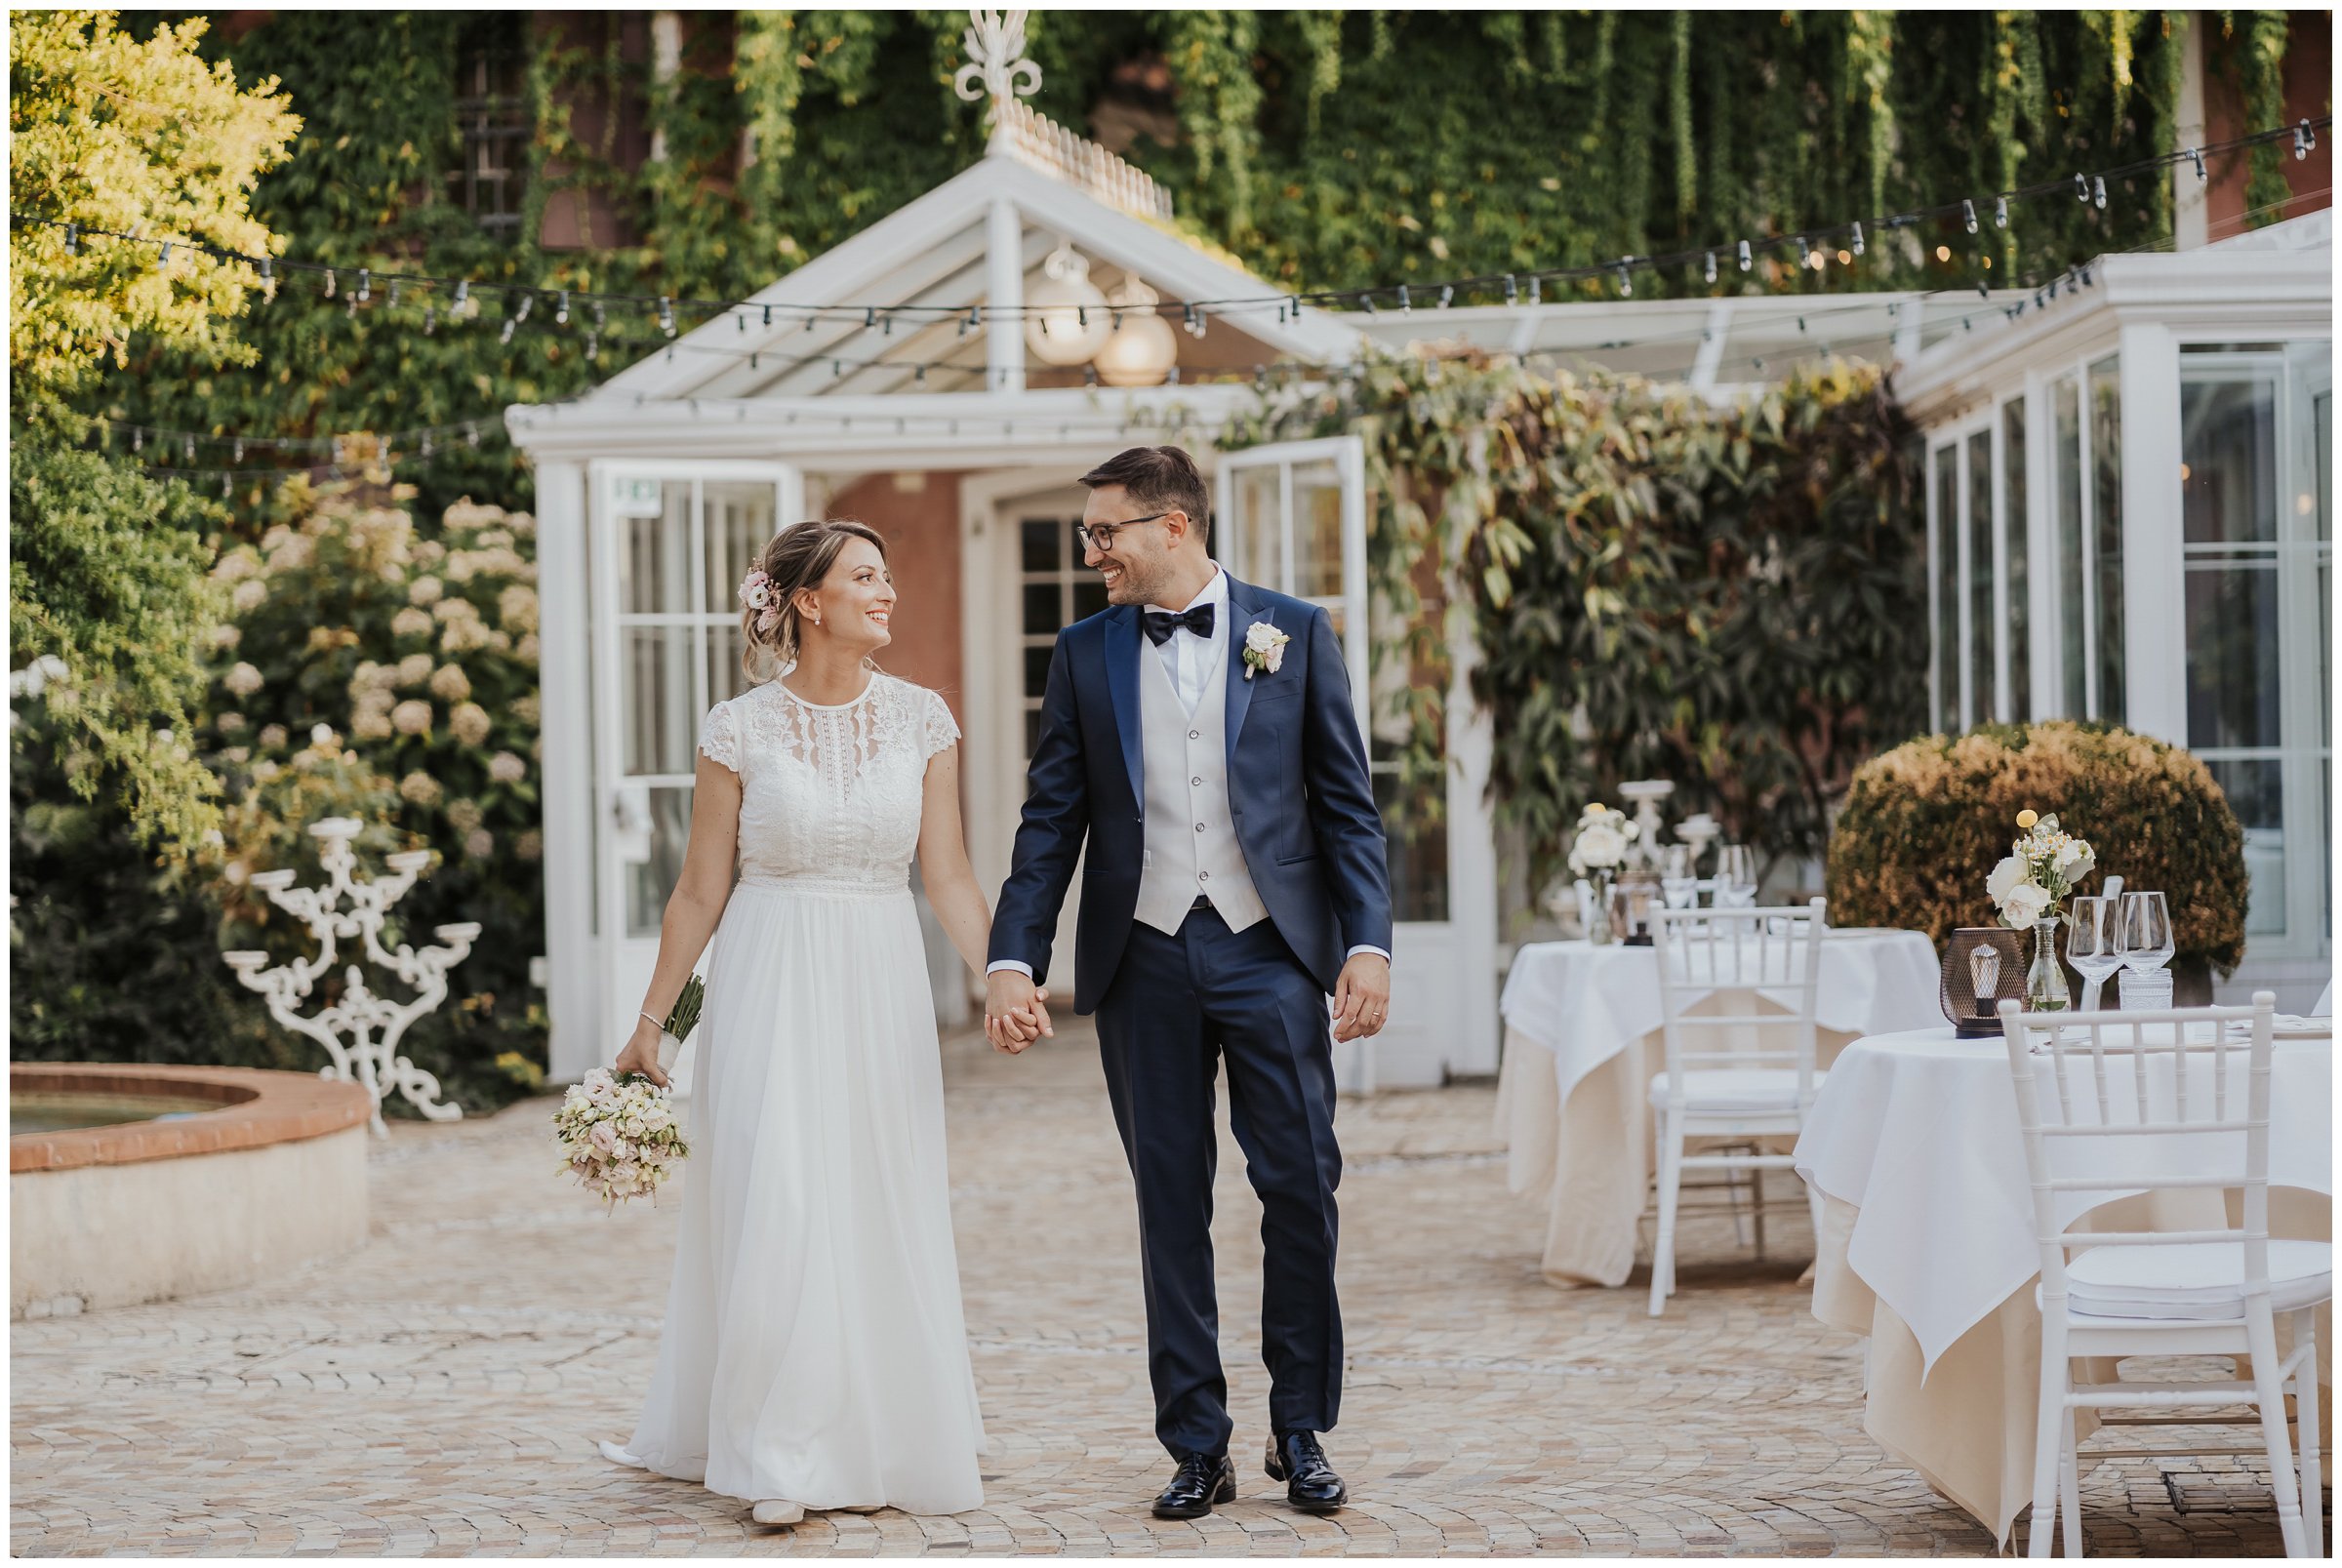 Matrimonio-villa-foscarini-cornaro-fotografo-matrimonio-treviso-fotografo-matrimonio-venezia-44.jpg